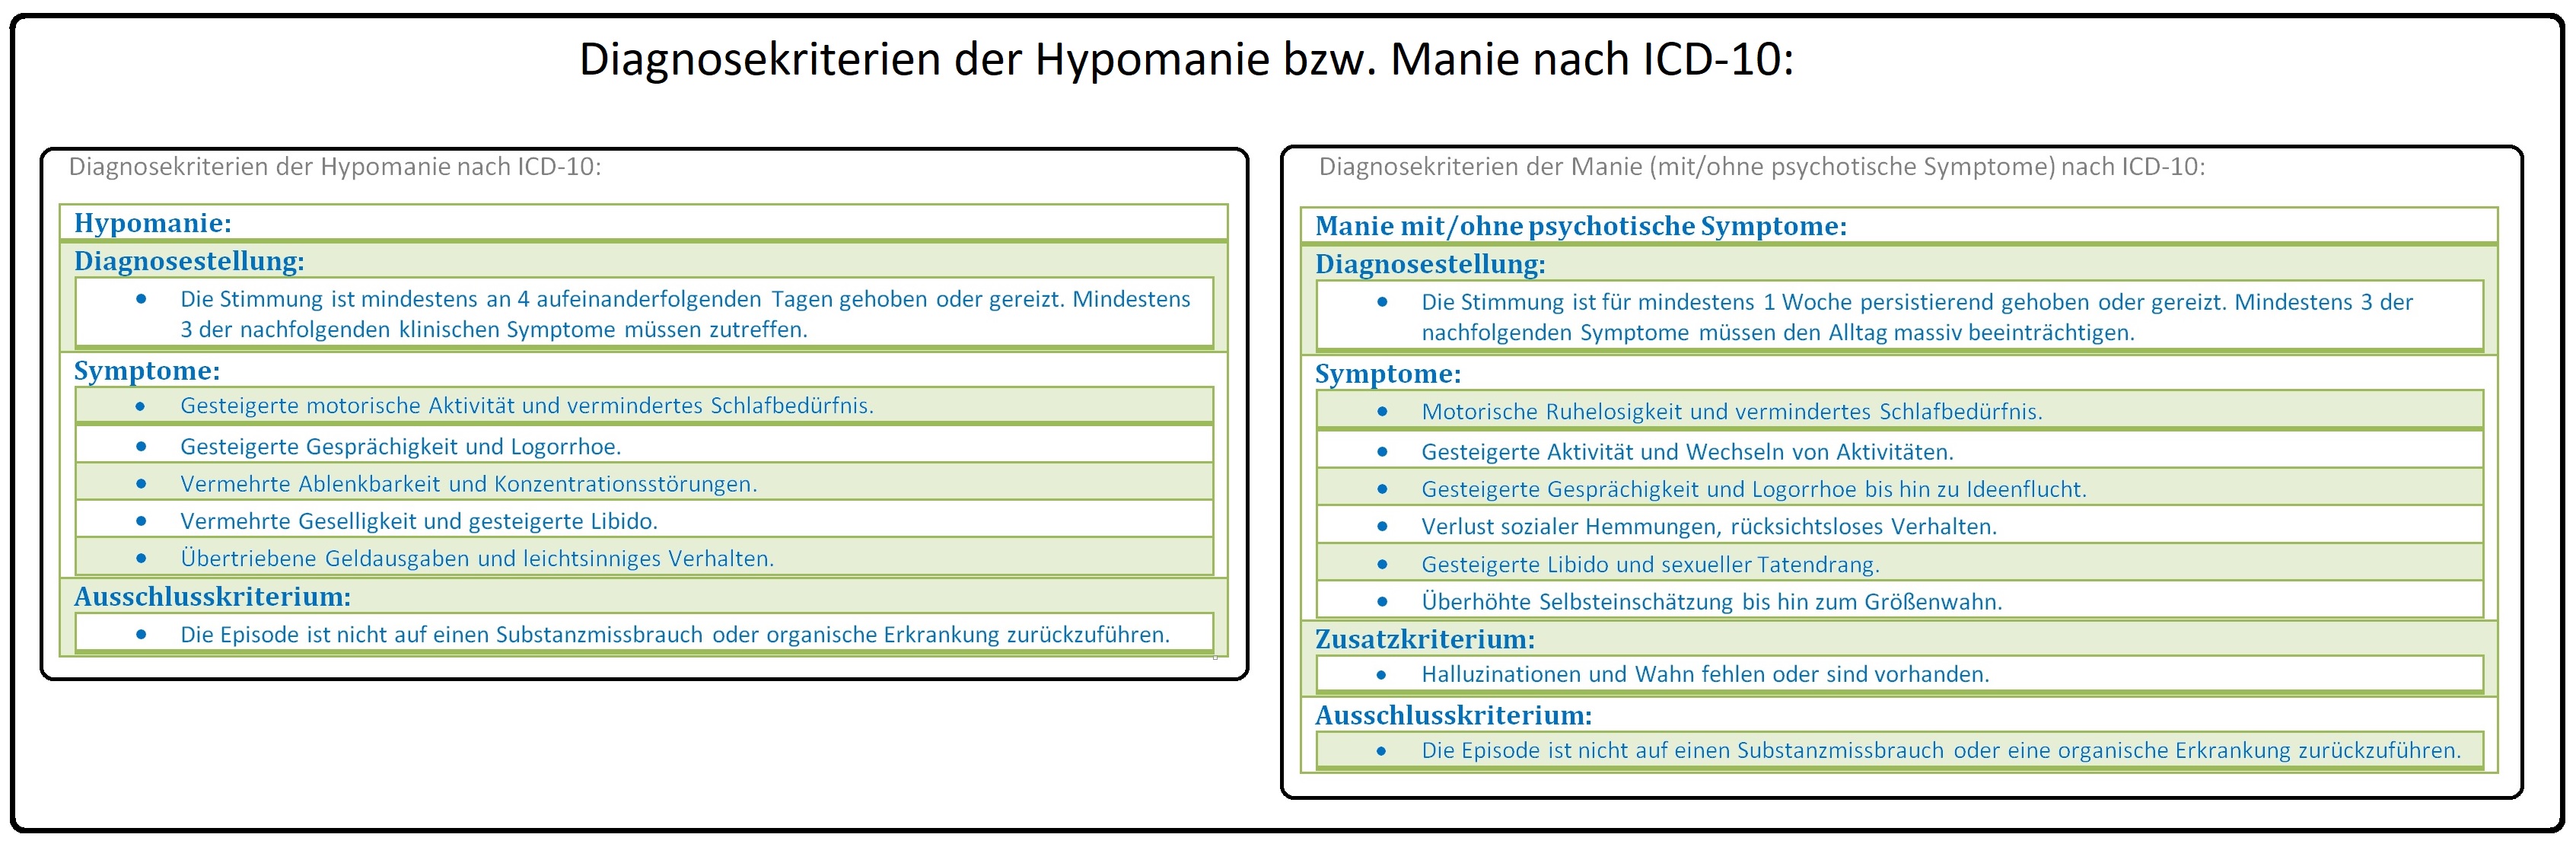 506 Diagnosekriterien der Hypomanie bzw. Manie nach ICD 10